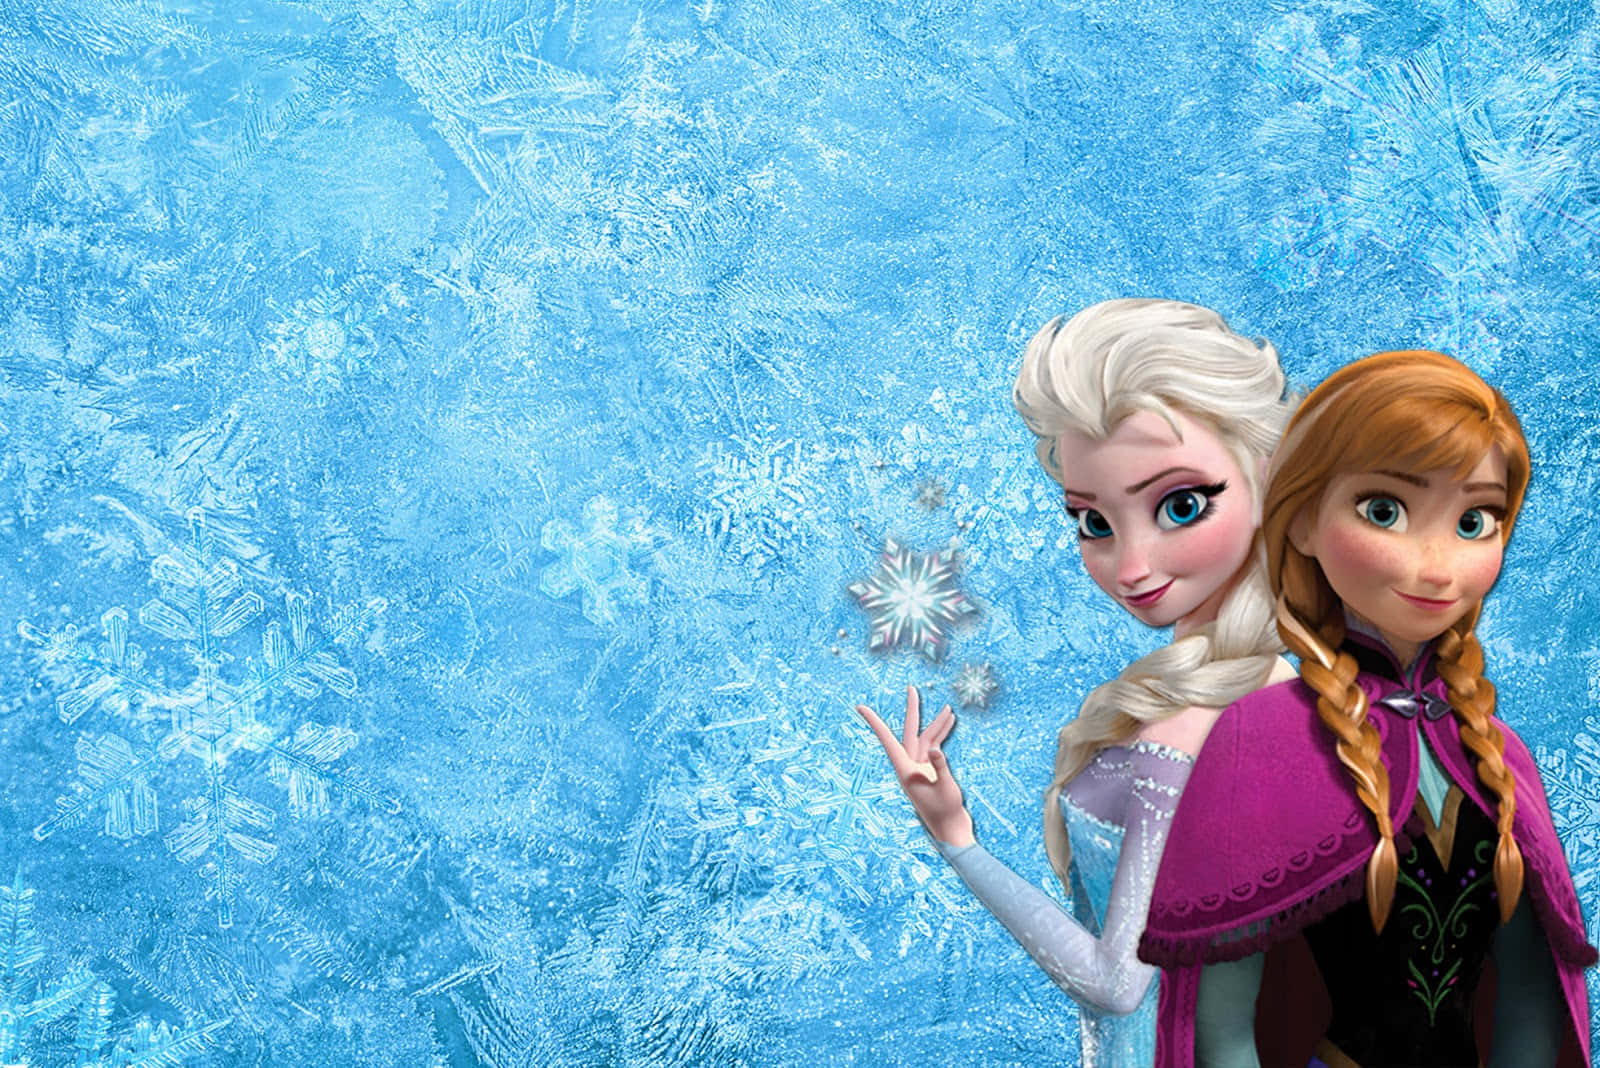 Einbild Vom Schloss Arendelle, Dem Helden Aus Disneys Die Eiskönigin